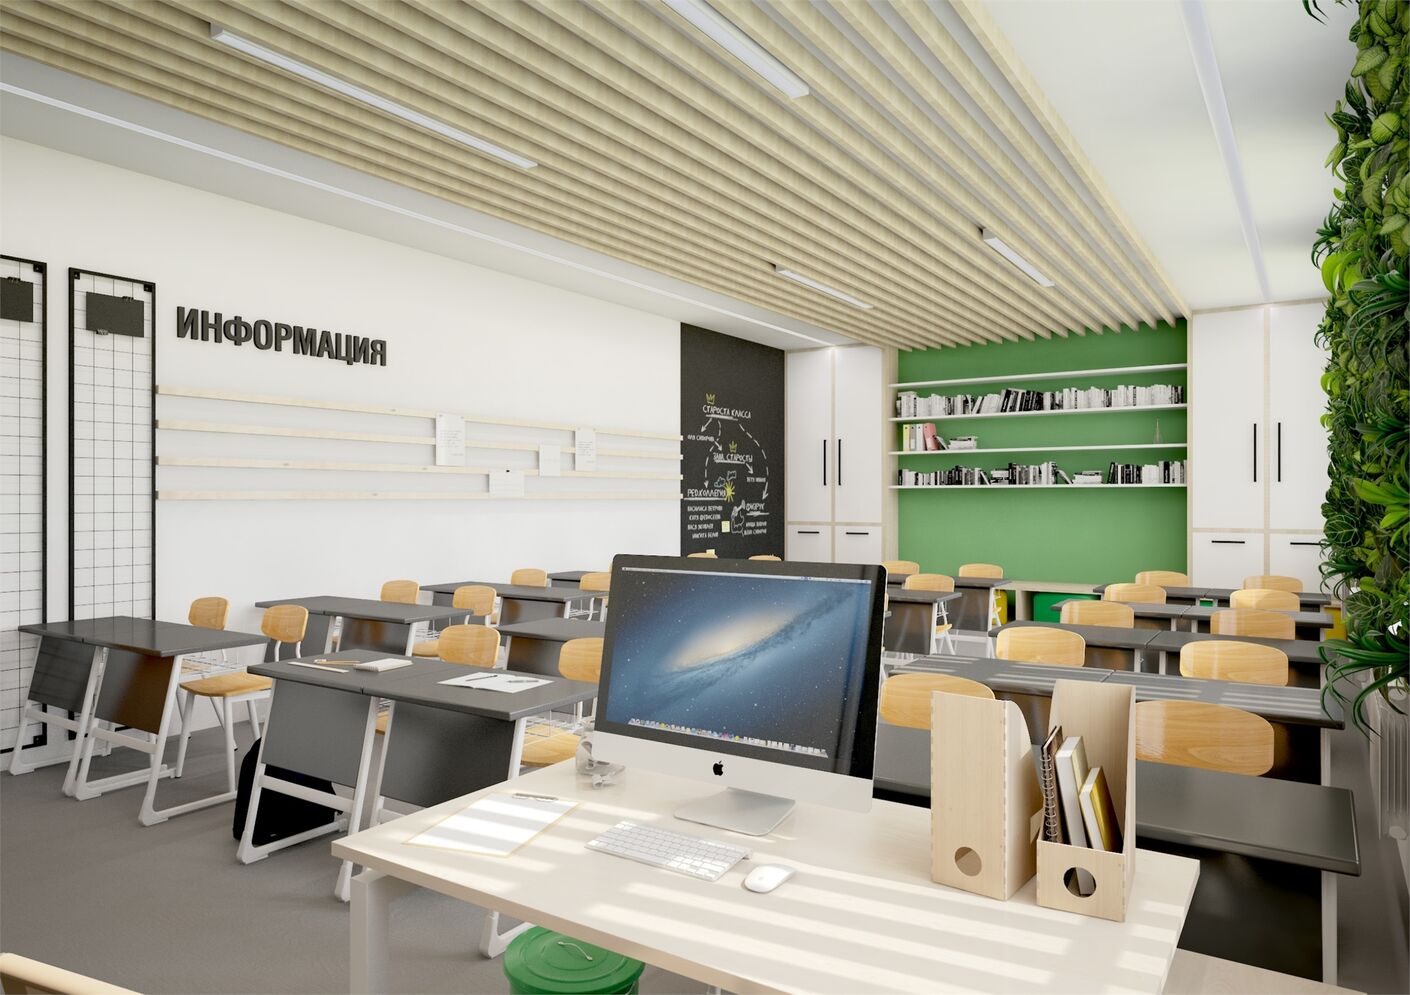 Лаборатория дизайна НИУ ВШЭ разработала концепции дизайна интерьеров московских школ - hsedesignlab.ru